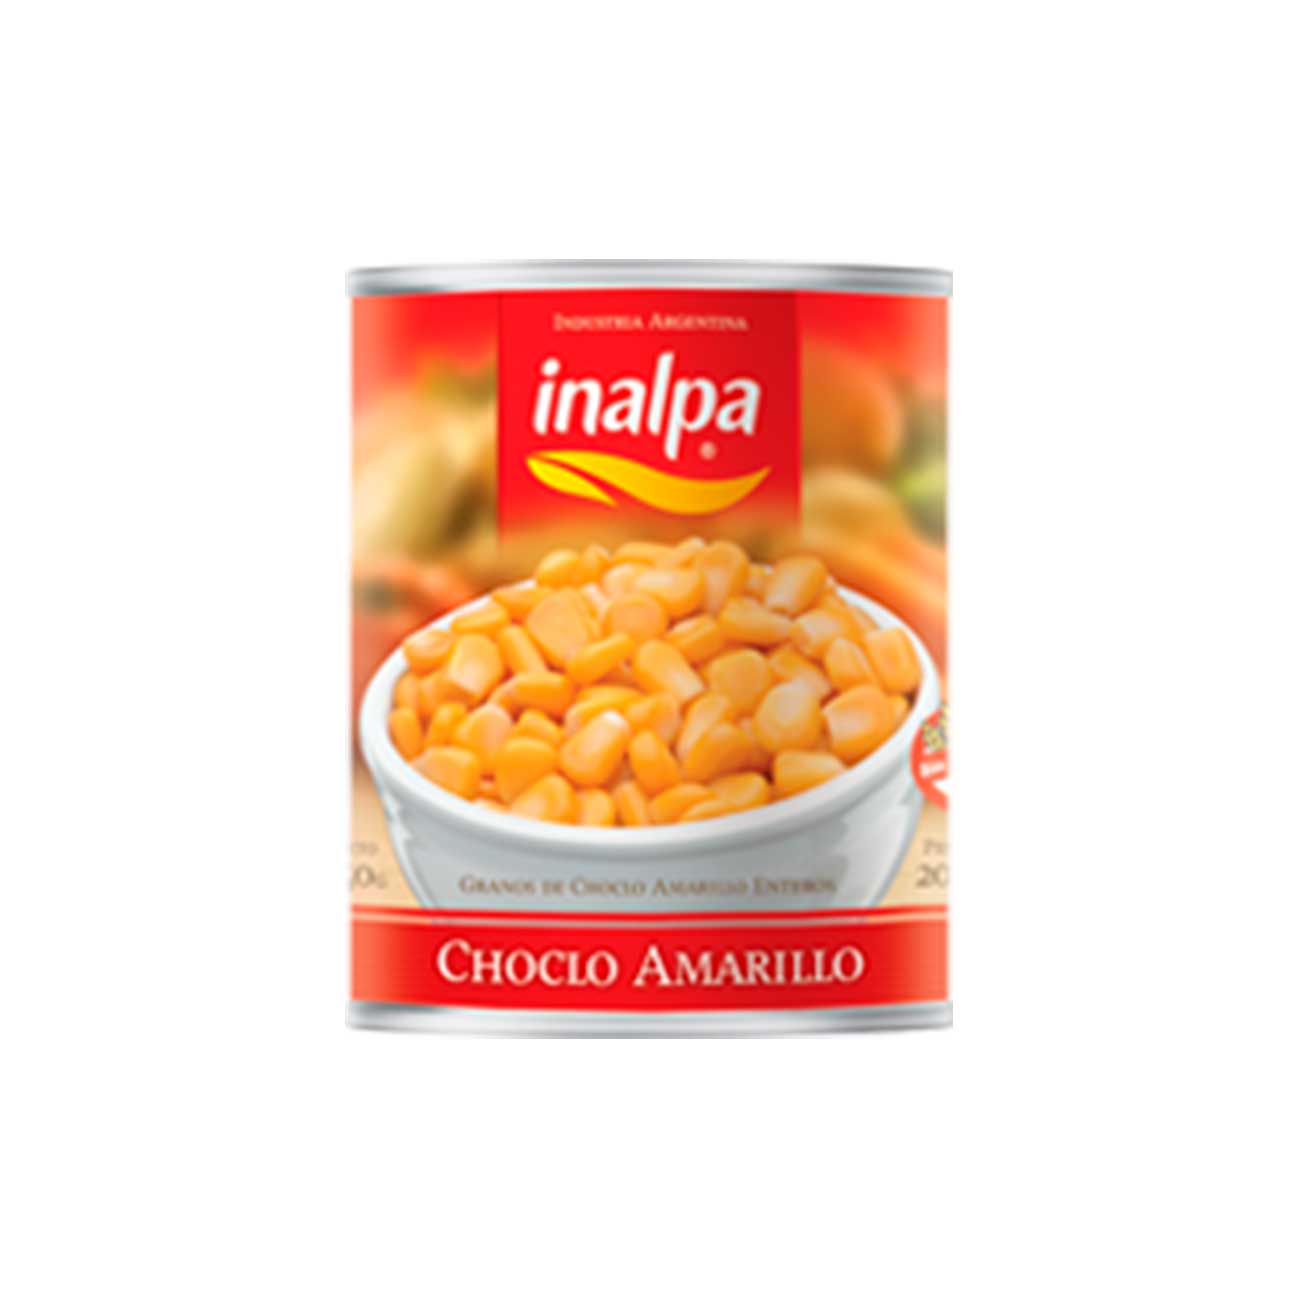 Choclo grano amarillo 840g INALPA